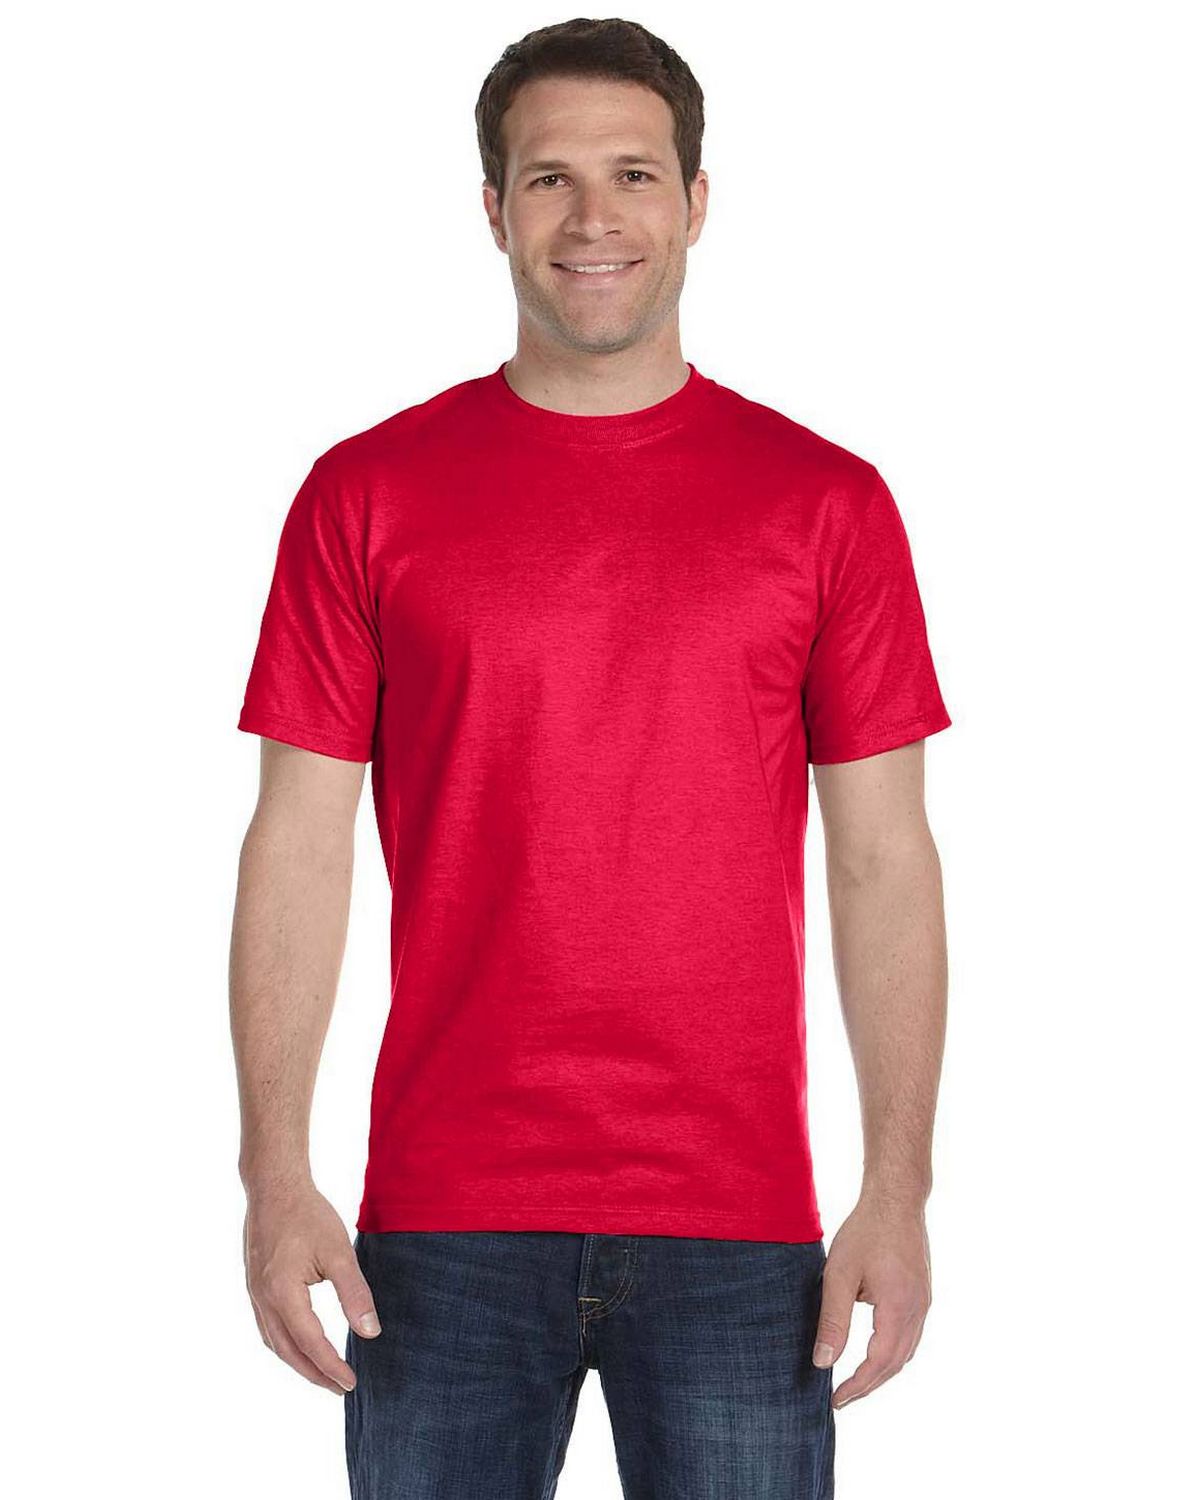 red gildan tshirt